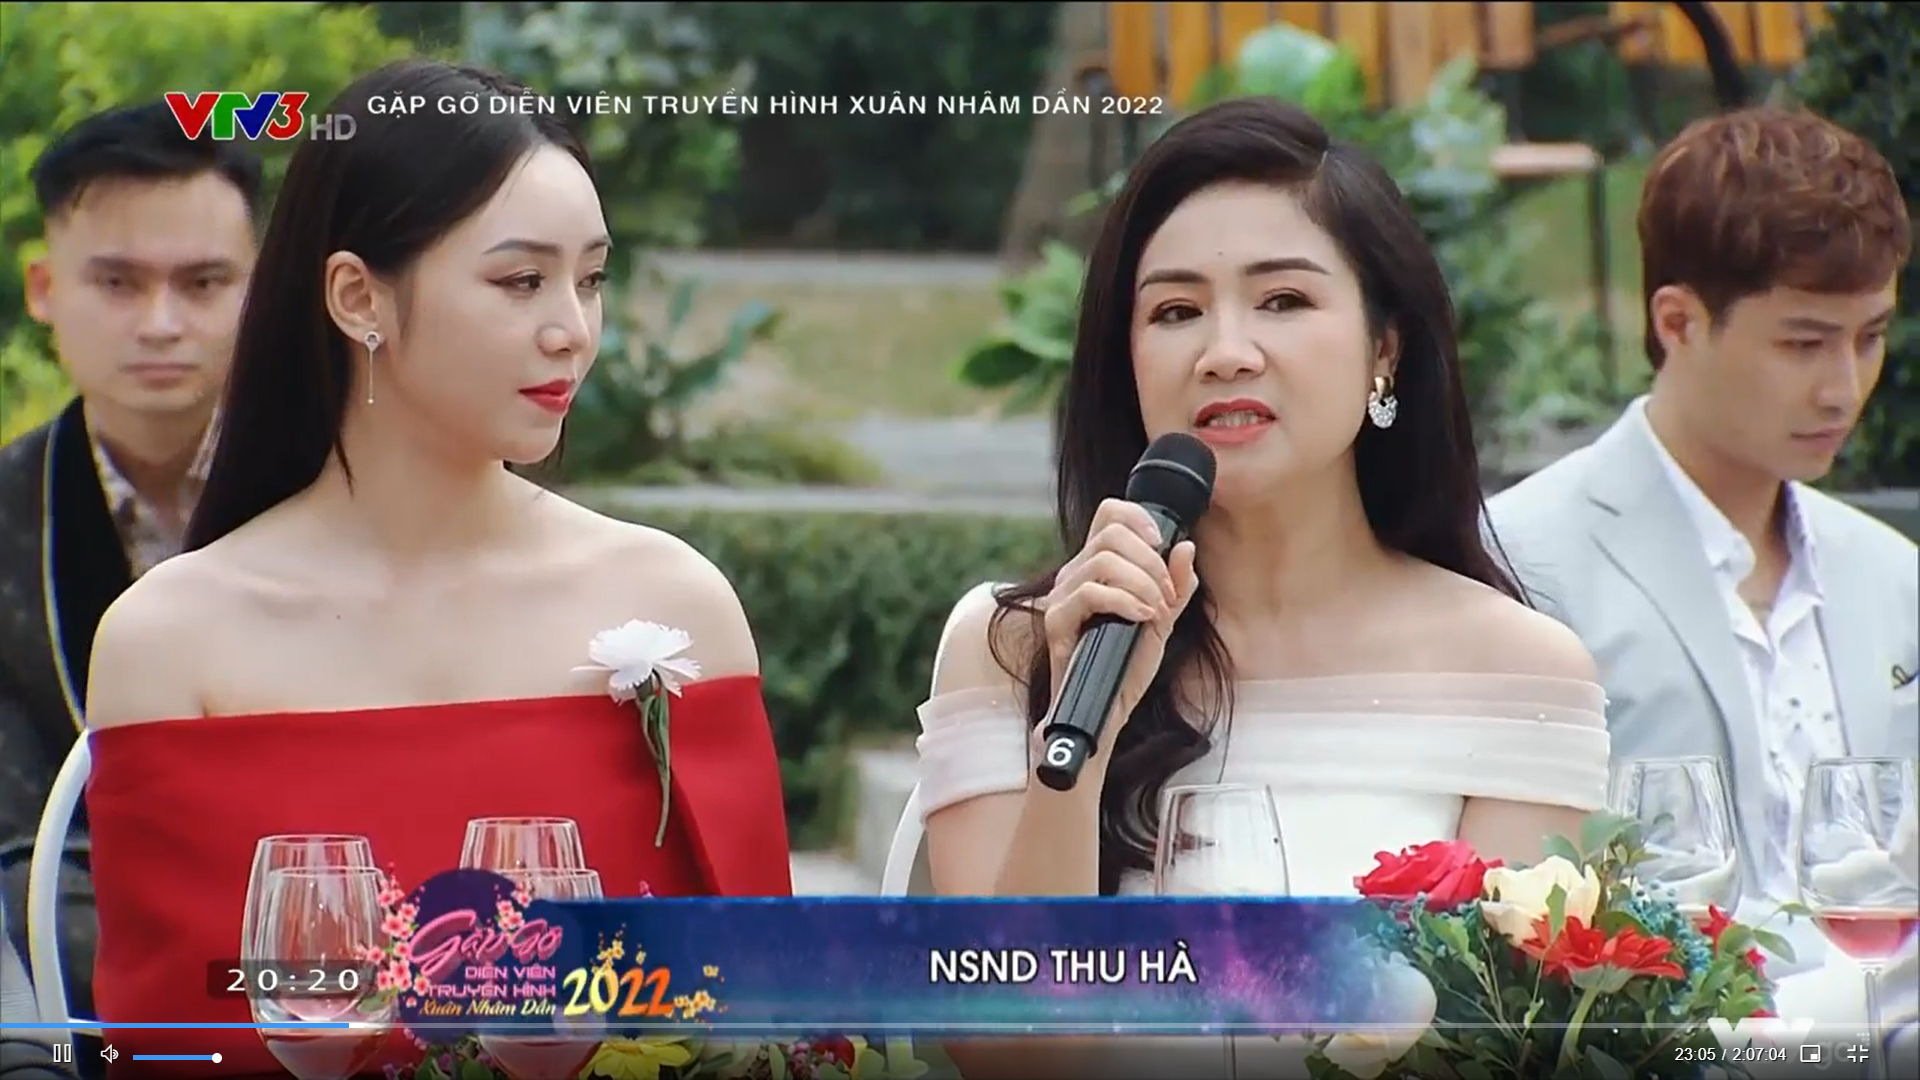 Gặp gỡ diễn viên truyền hình 2022: Dàn diễn viên bật mí nguyên nhân giúp phim Việt tỏa sáng trong đại dịch - Ảnh 2.